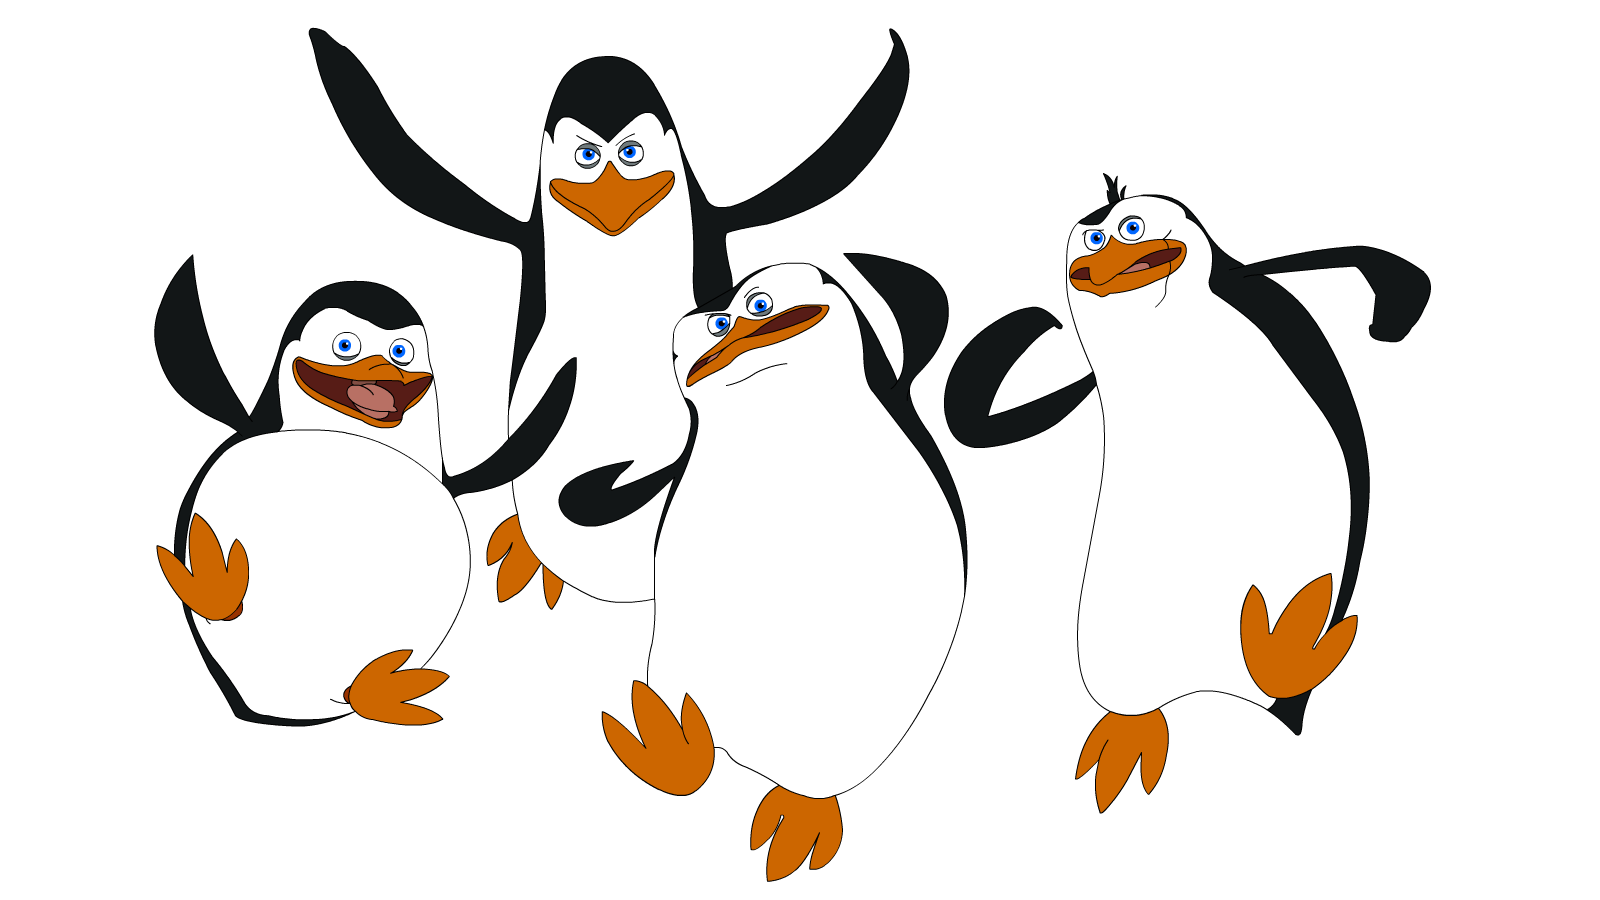 Madagascar Penguins Png - Penguins Of Madagascar 2d - 1600x900 Wallpaper -  